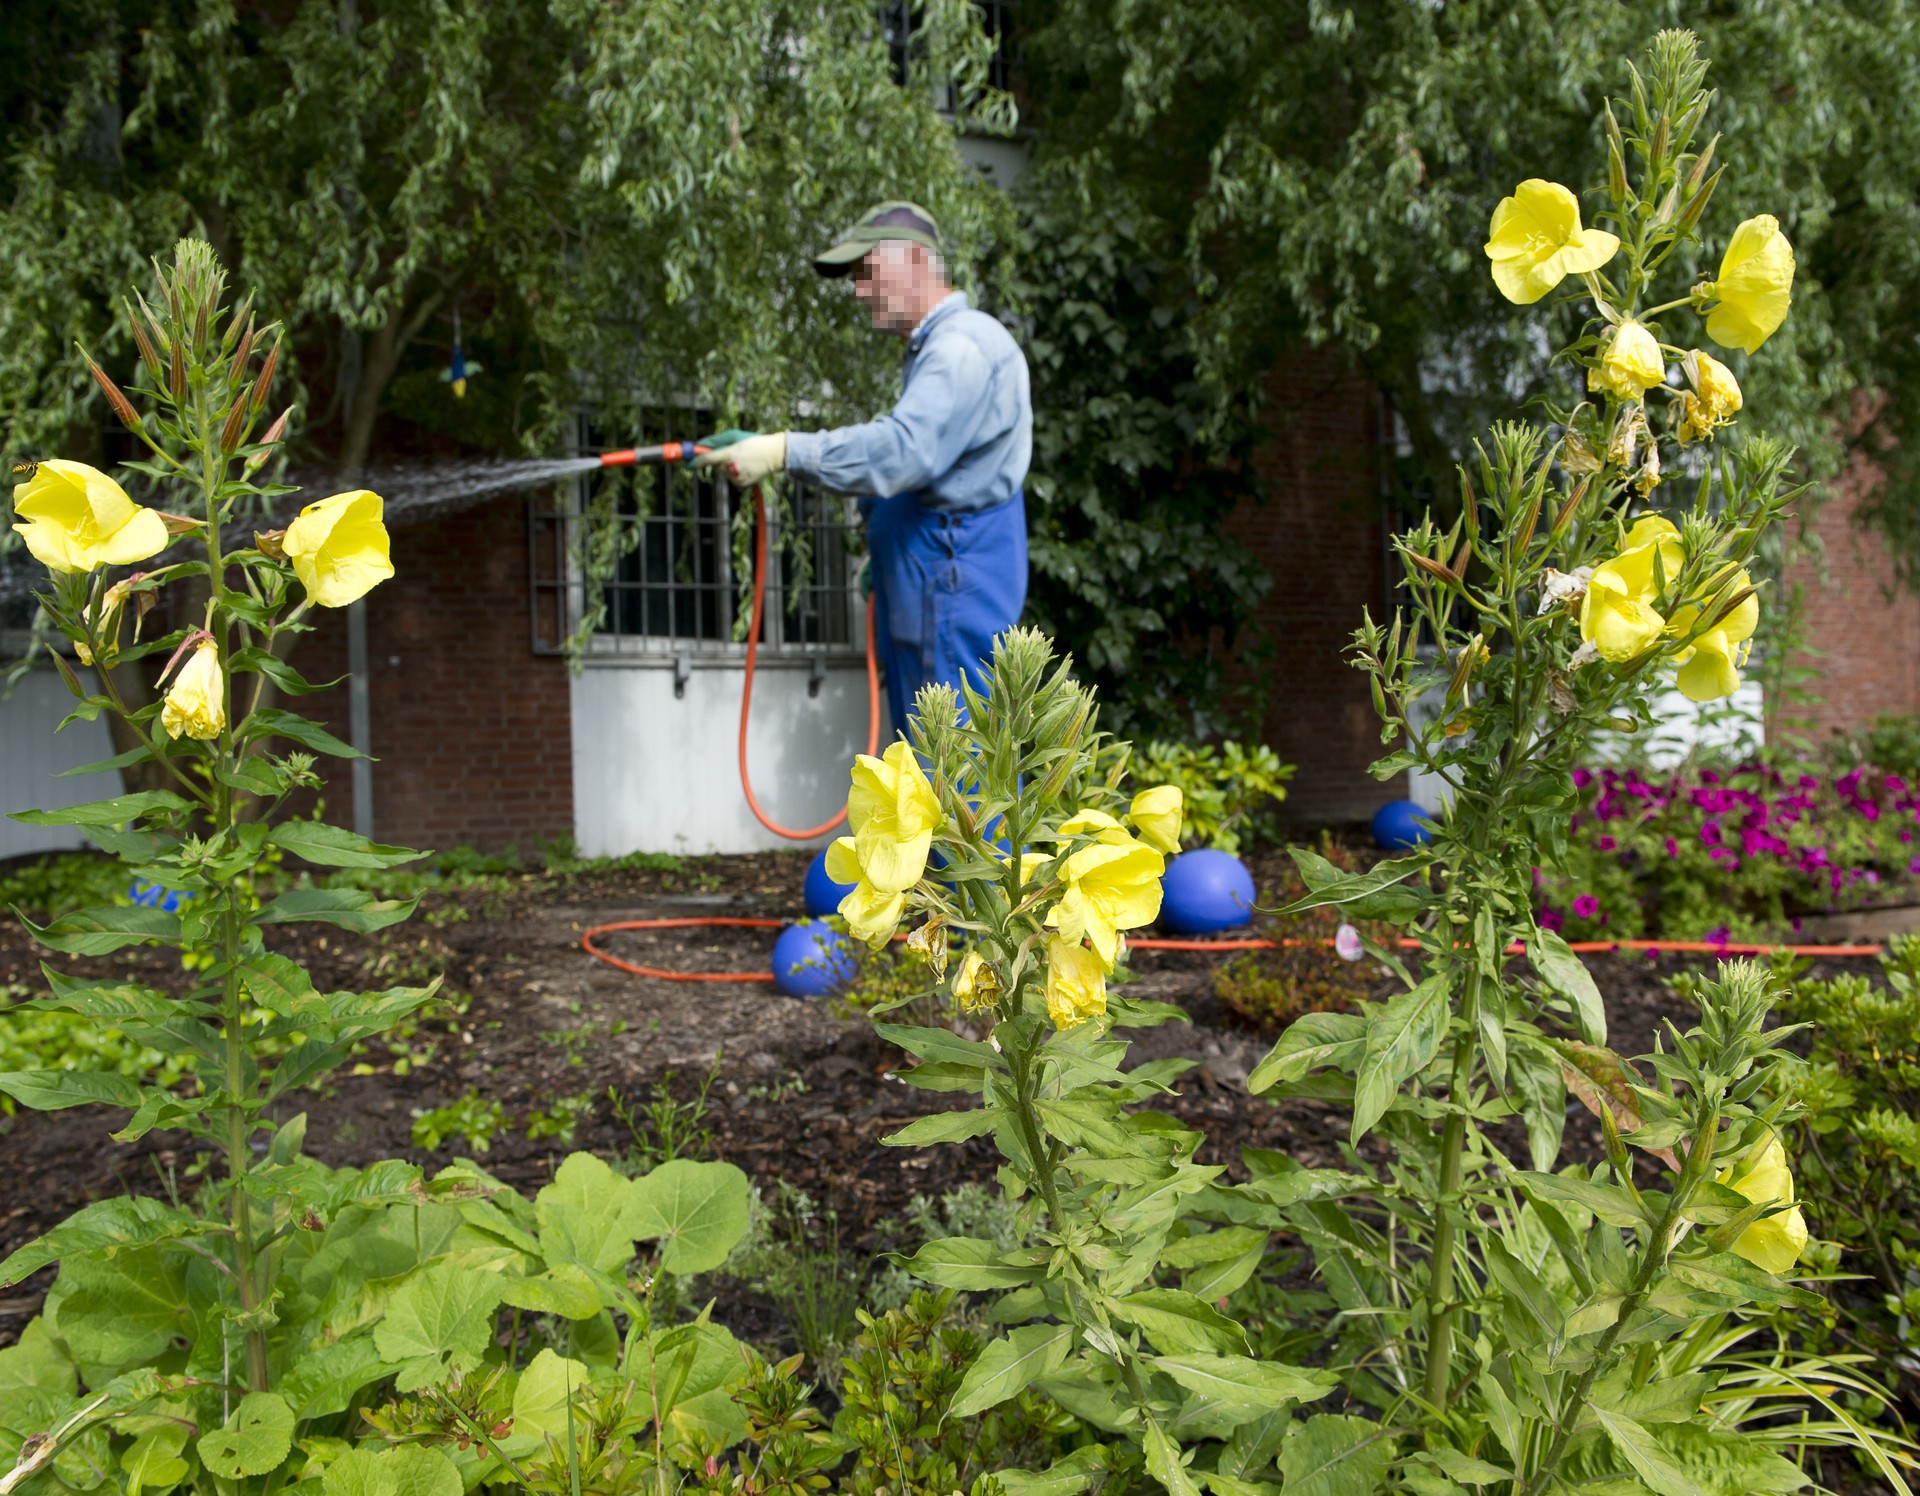 Ein Mann mit Basecap und Blaumann gießt Blumen mit einem Gartenschlauch.